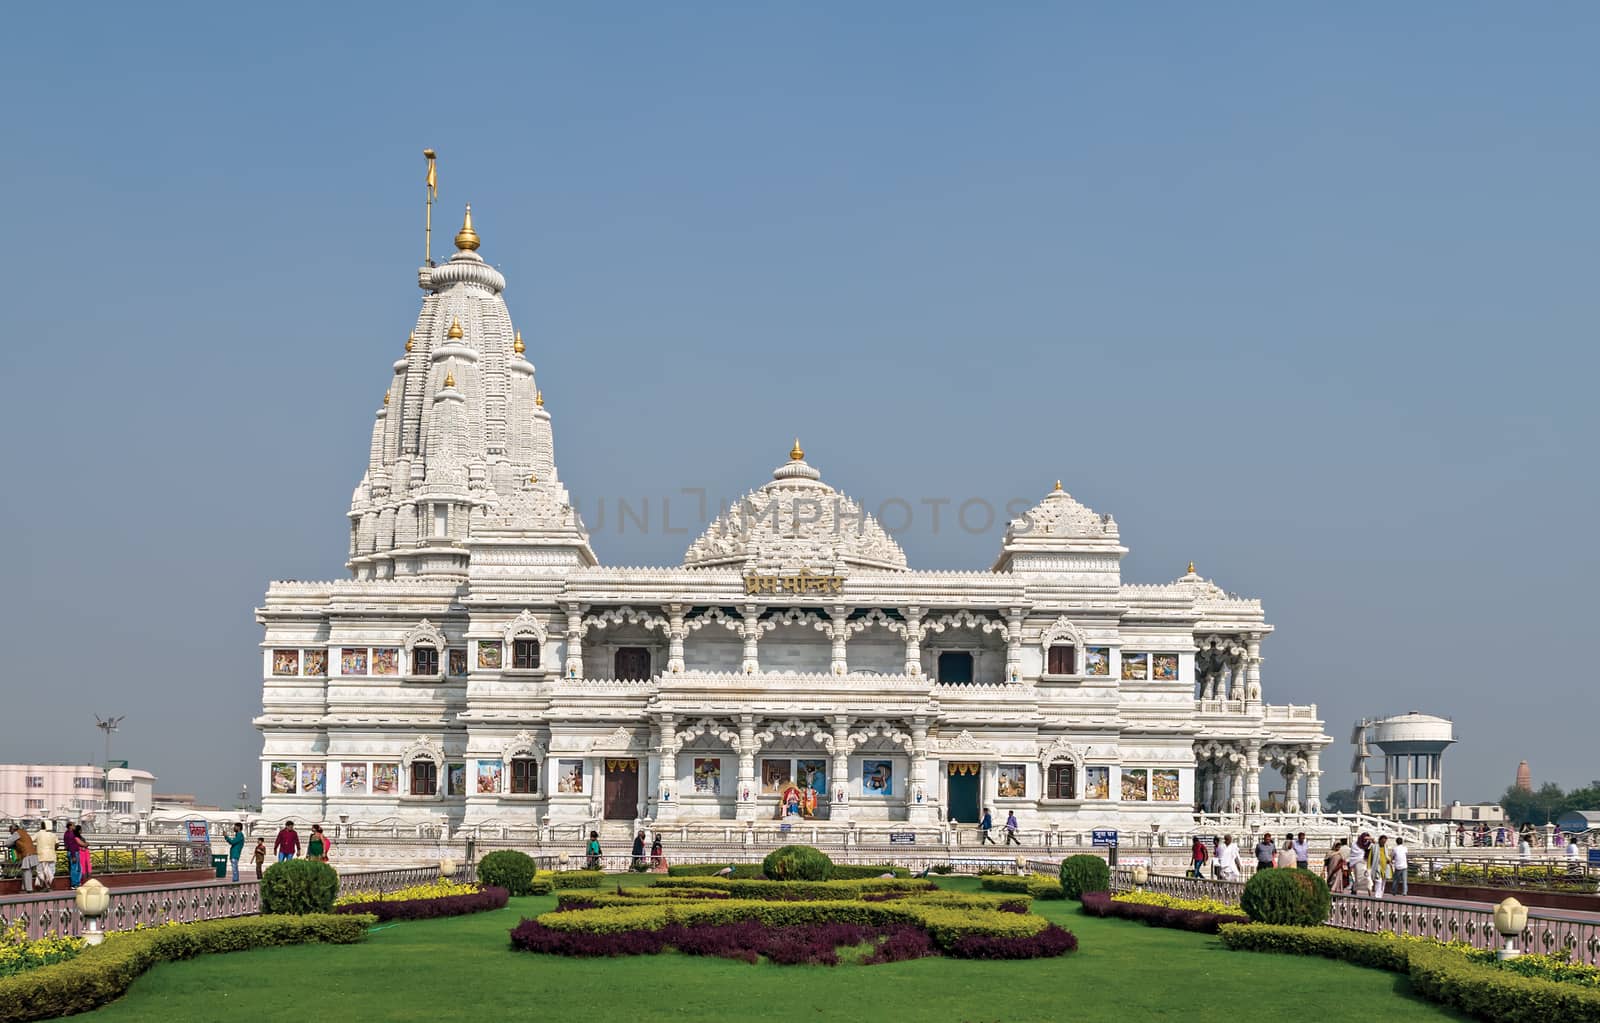 Prem Mandir temple in Vrindavan, Mathura. India. by lalam